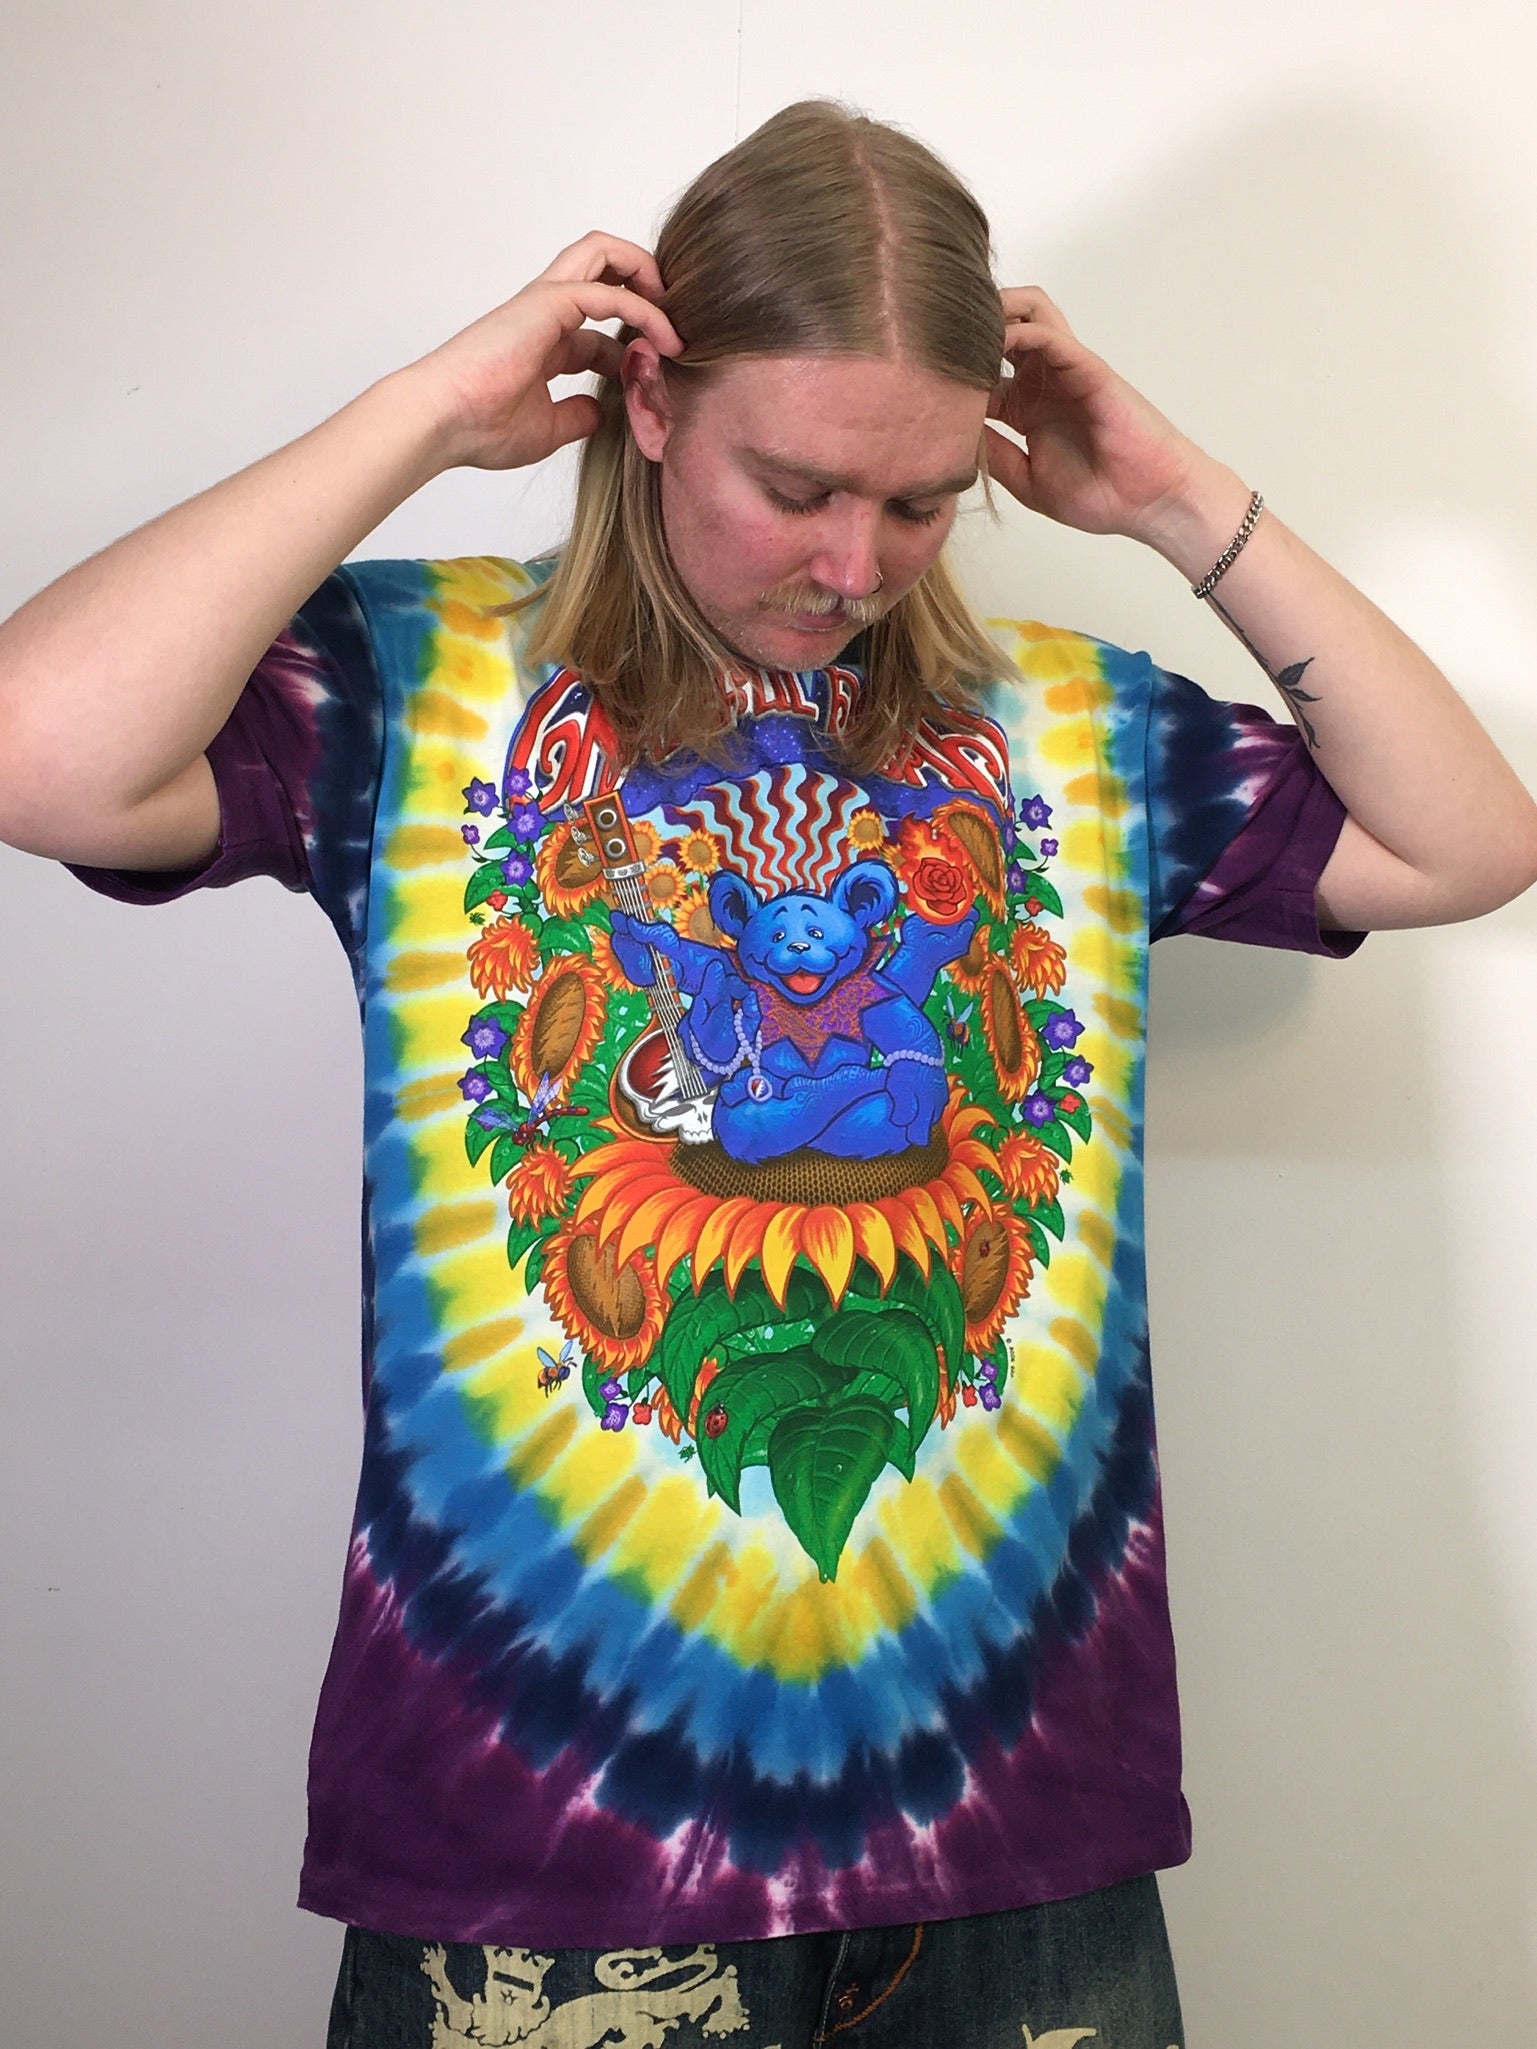 Grateful Dead Guru Bear Tie-Dye T-Shirt